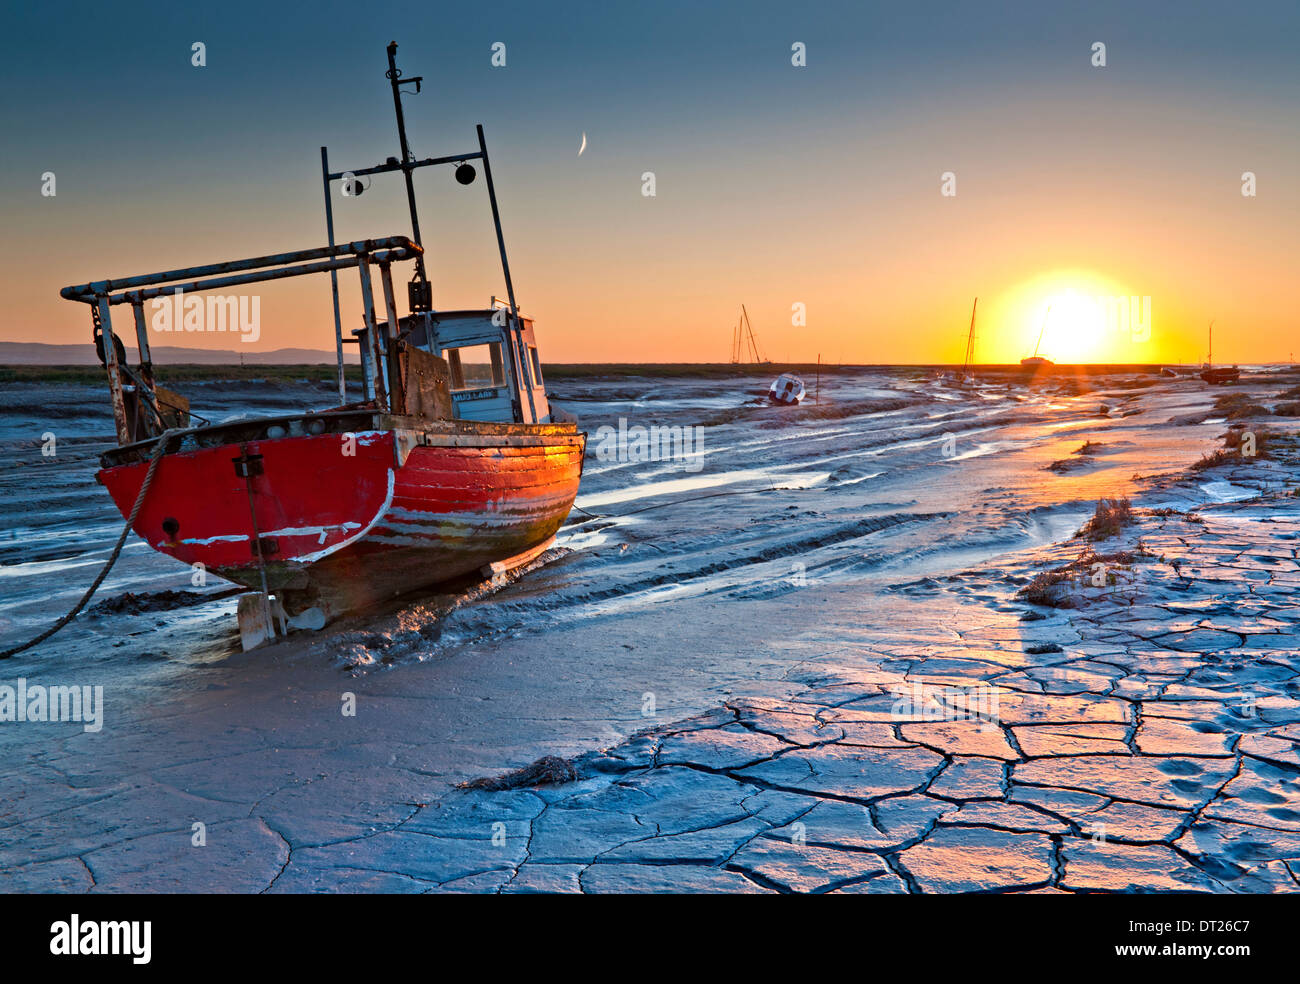 Pisos de lodo y barcos de pesca al atardecer, Heswall Dee, el estuario, el Wirral, Merseyside, Inglaterra, Reino Unido. Foto de stock